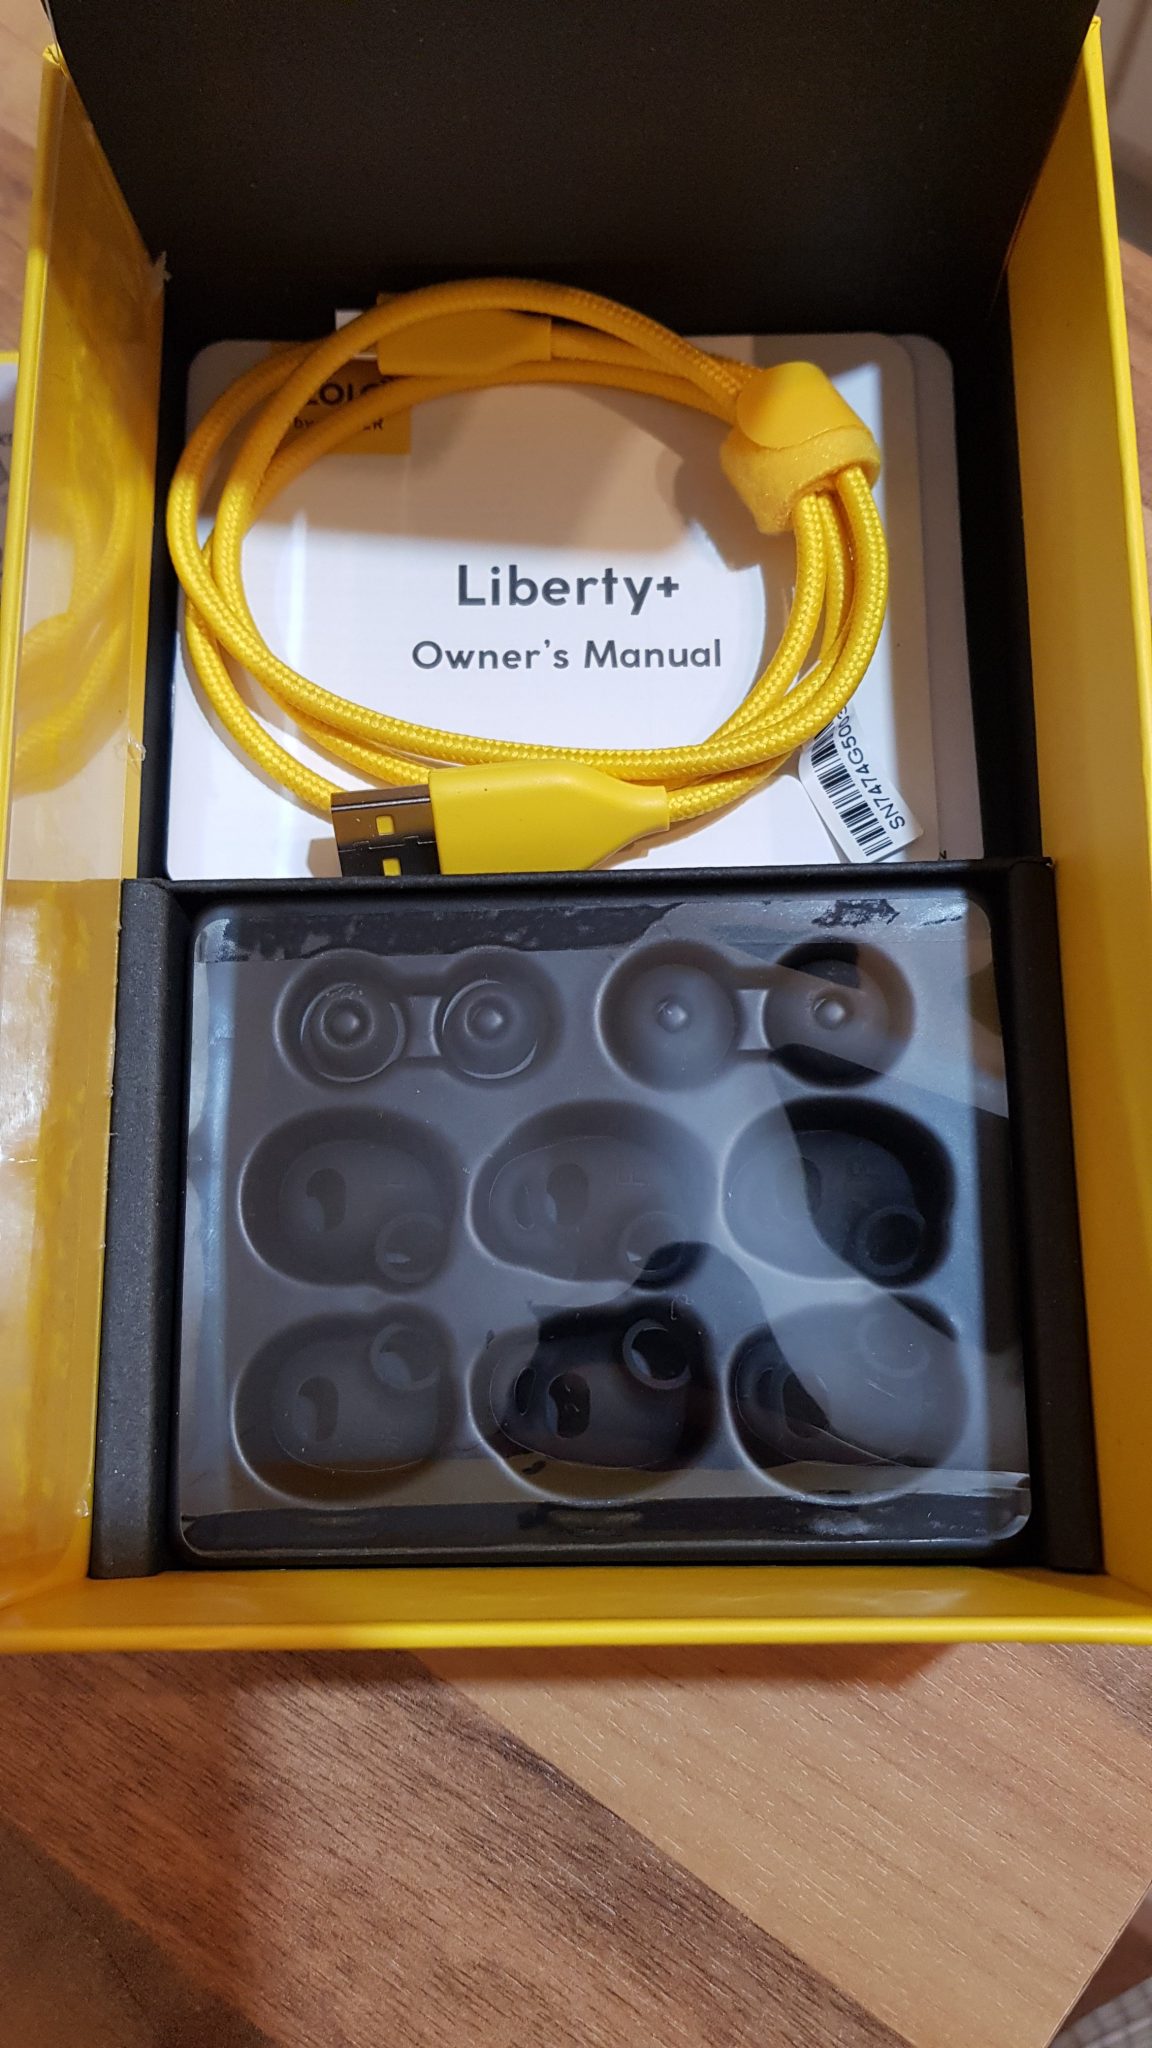 Zolo Liberty+ Verpackung Innen